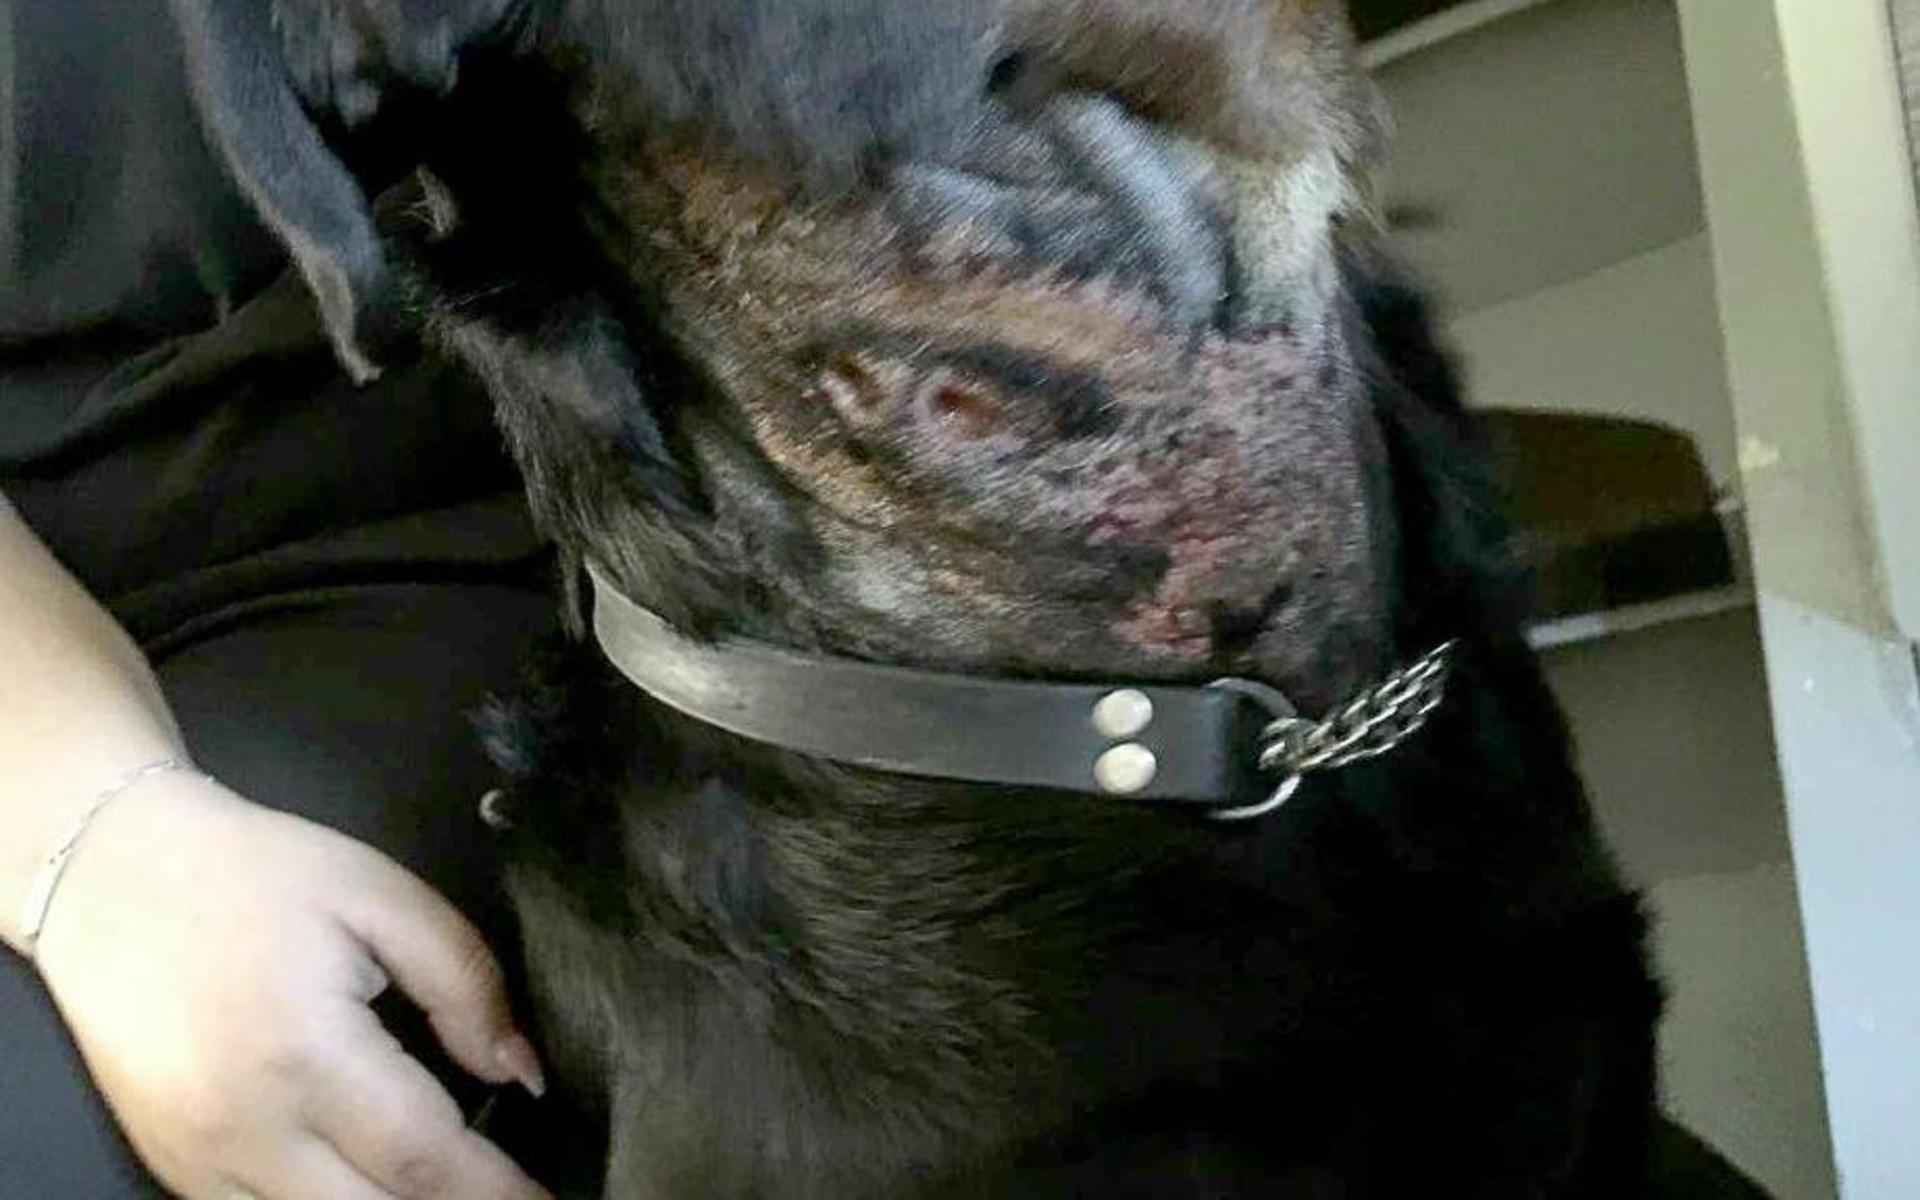 Den 2,5 år gamla rottweilern hade två runda sår på halsen som bedöms ha orsakats av långvarigt användande av antiskällhalsband. Halsbandet har metallpiggar som trängt igenom huden.